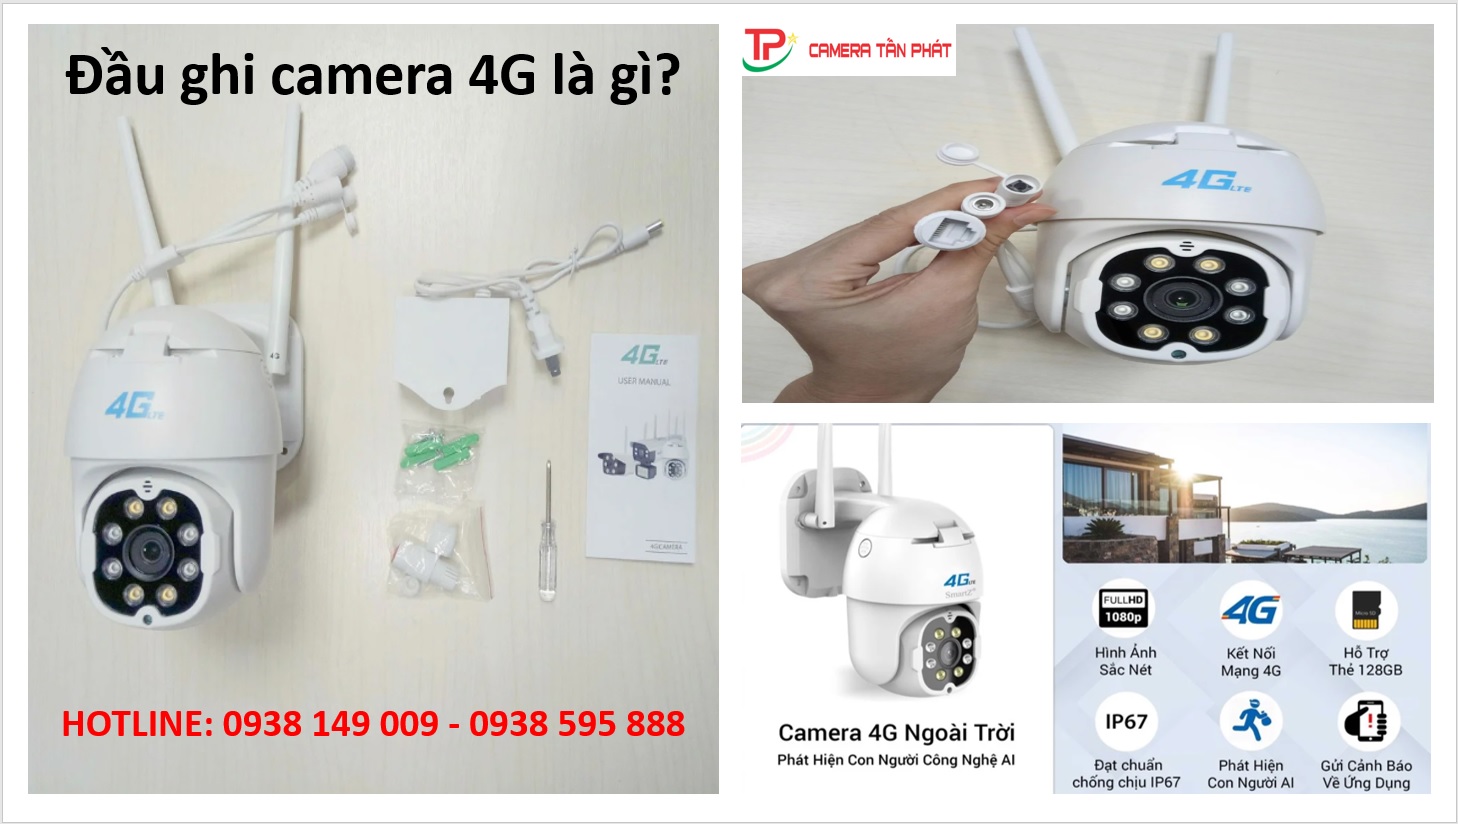 Dau Ghi Camera 4G La Gi